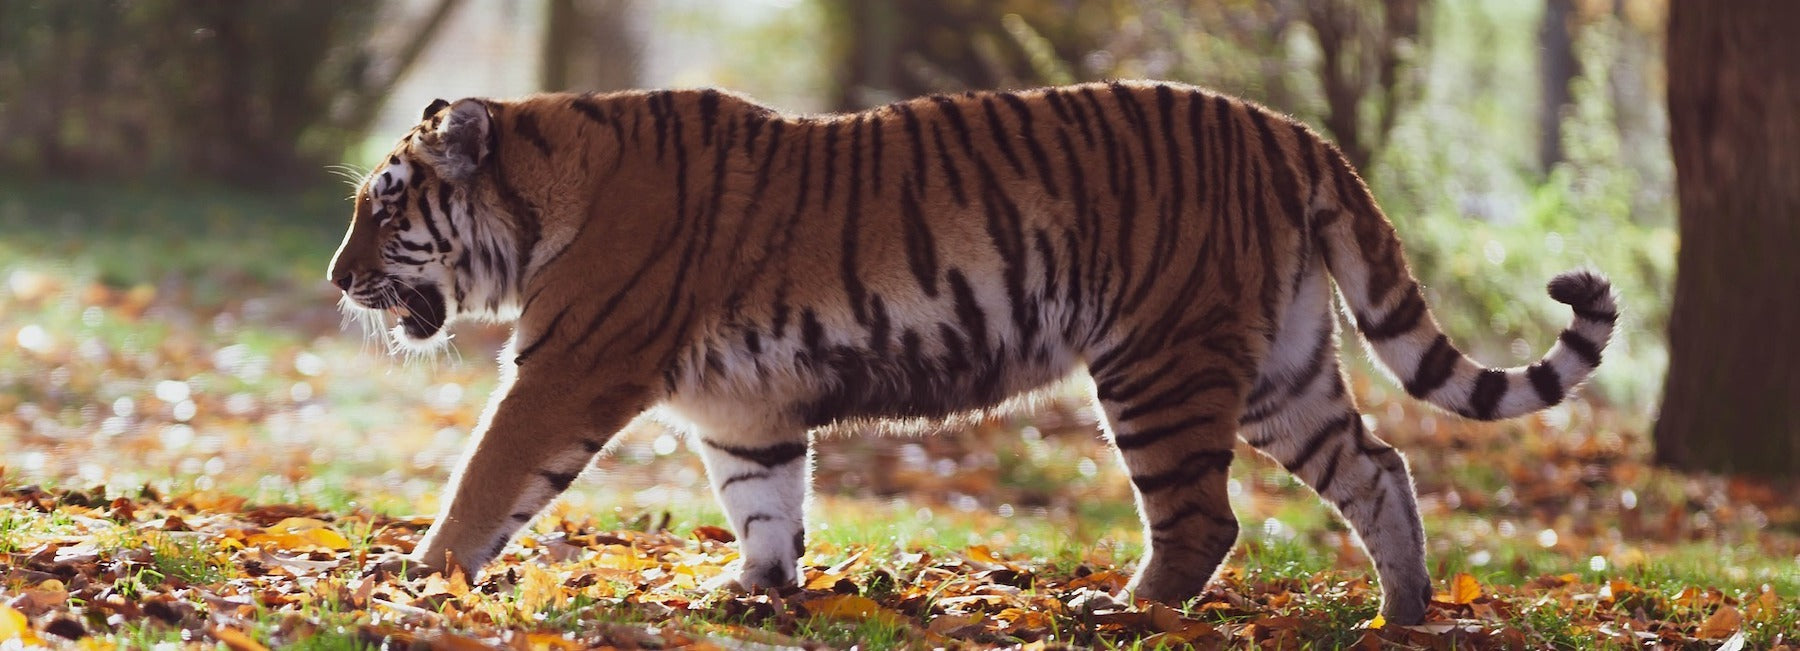 Tigre en chasse dans la jungle